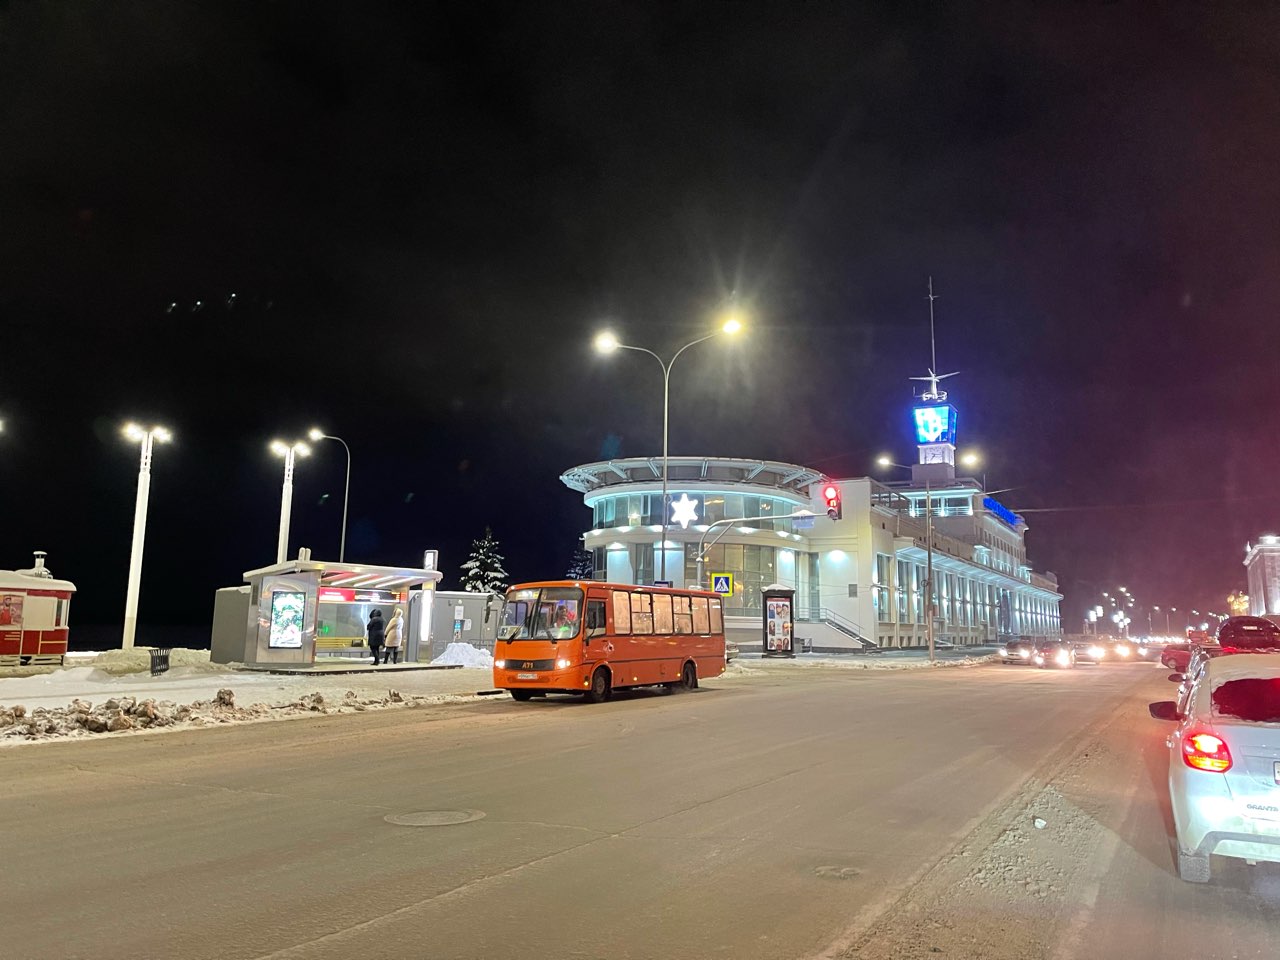 Обнародован список маршрутов новой транспортной сети в Нижнем Новгороде  - фото 1